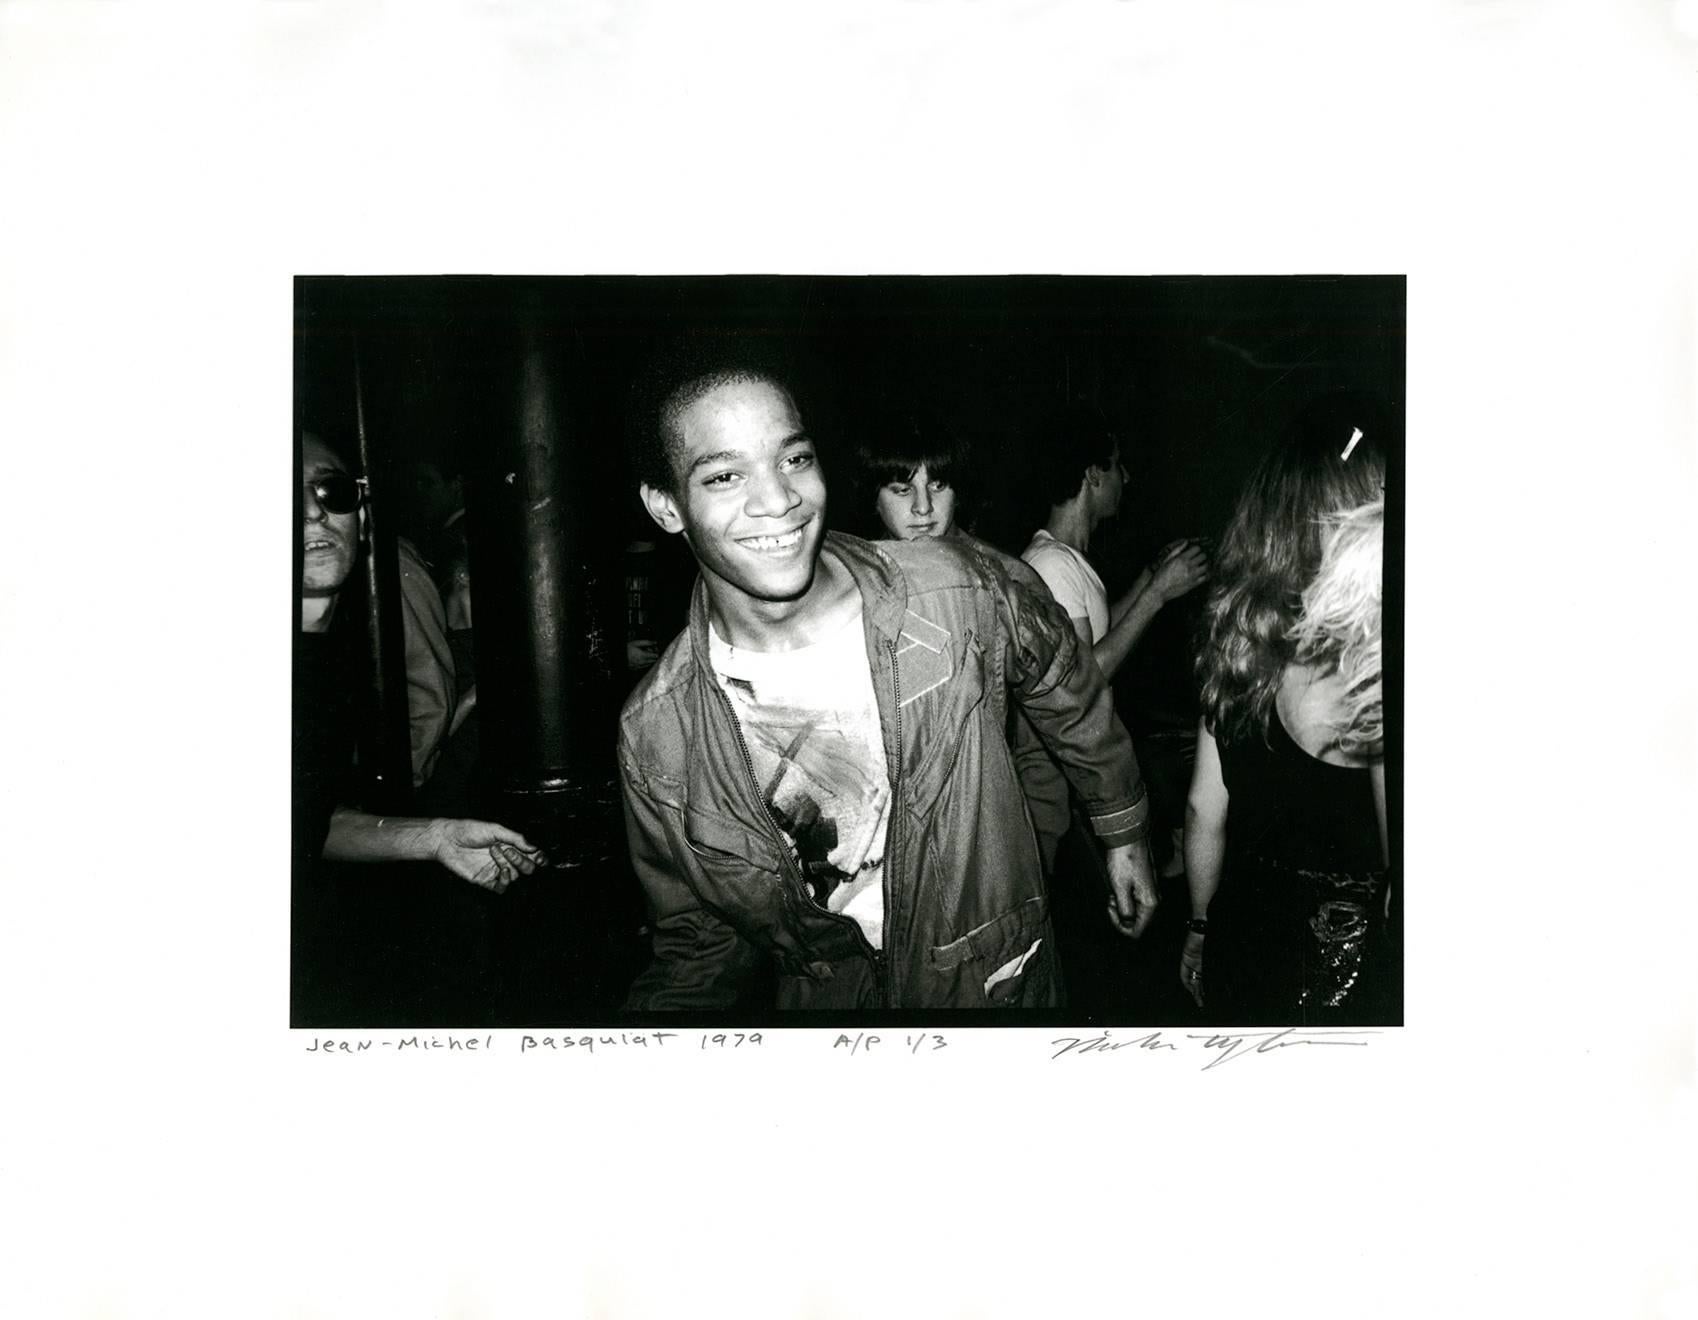 Dancing at The Mudd Club von Jean-Michel Basquiat (Basquiat Boom für Real) (Pop-Art), Photograph, von Nicholas Taylor